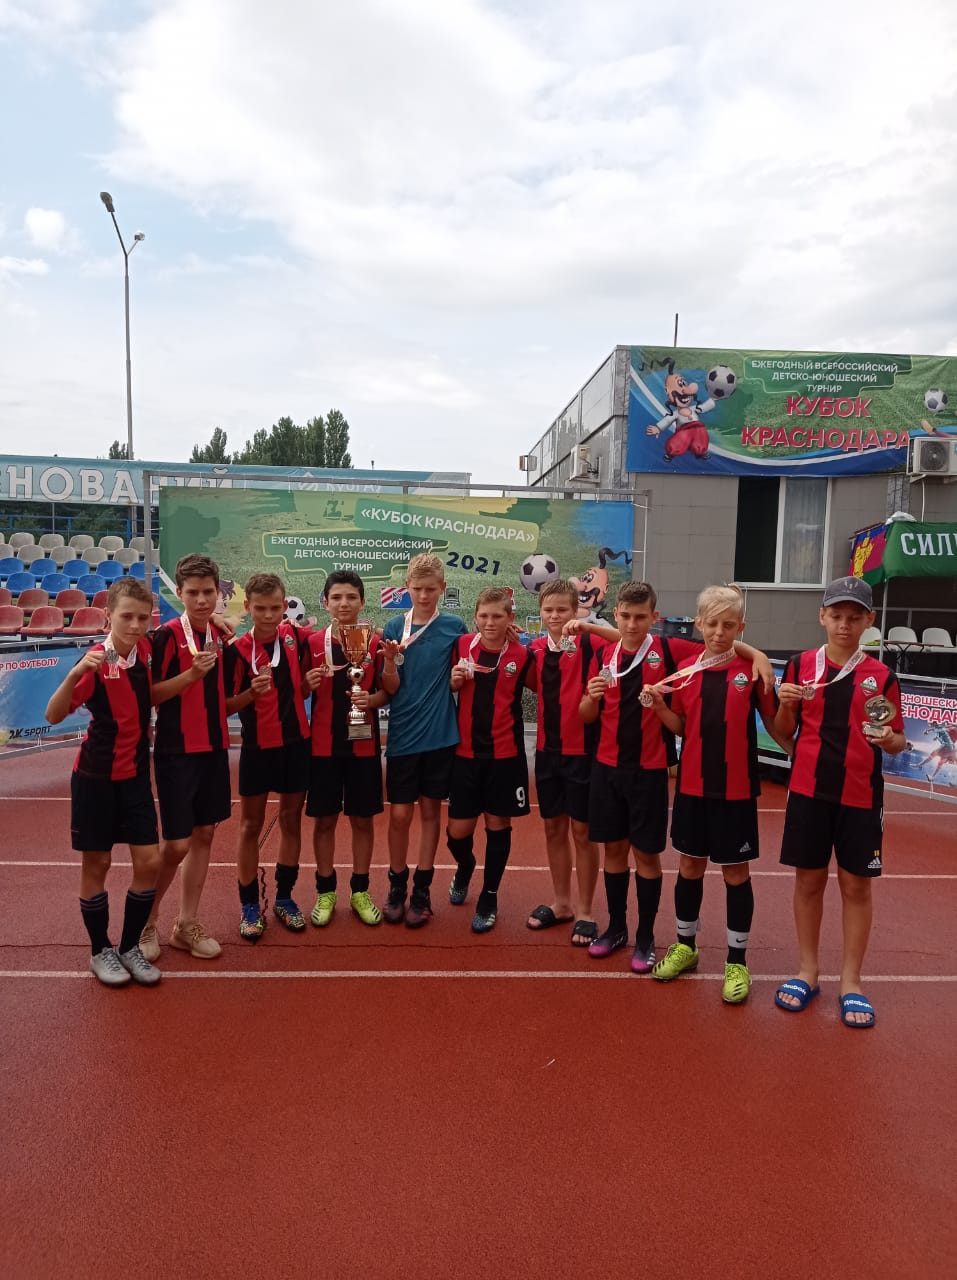 Команда «СШ7–Лидер-ЮГ» заняла 2 место во Всероссийском детско-юношеском турнире по футболу «Летний Кубок Краснодара 2021» (среди юношей 2009 г.р.) 15-19 августа 2021 г.